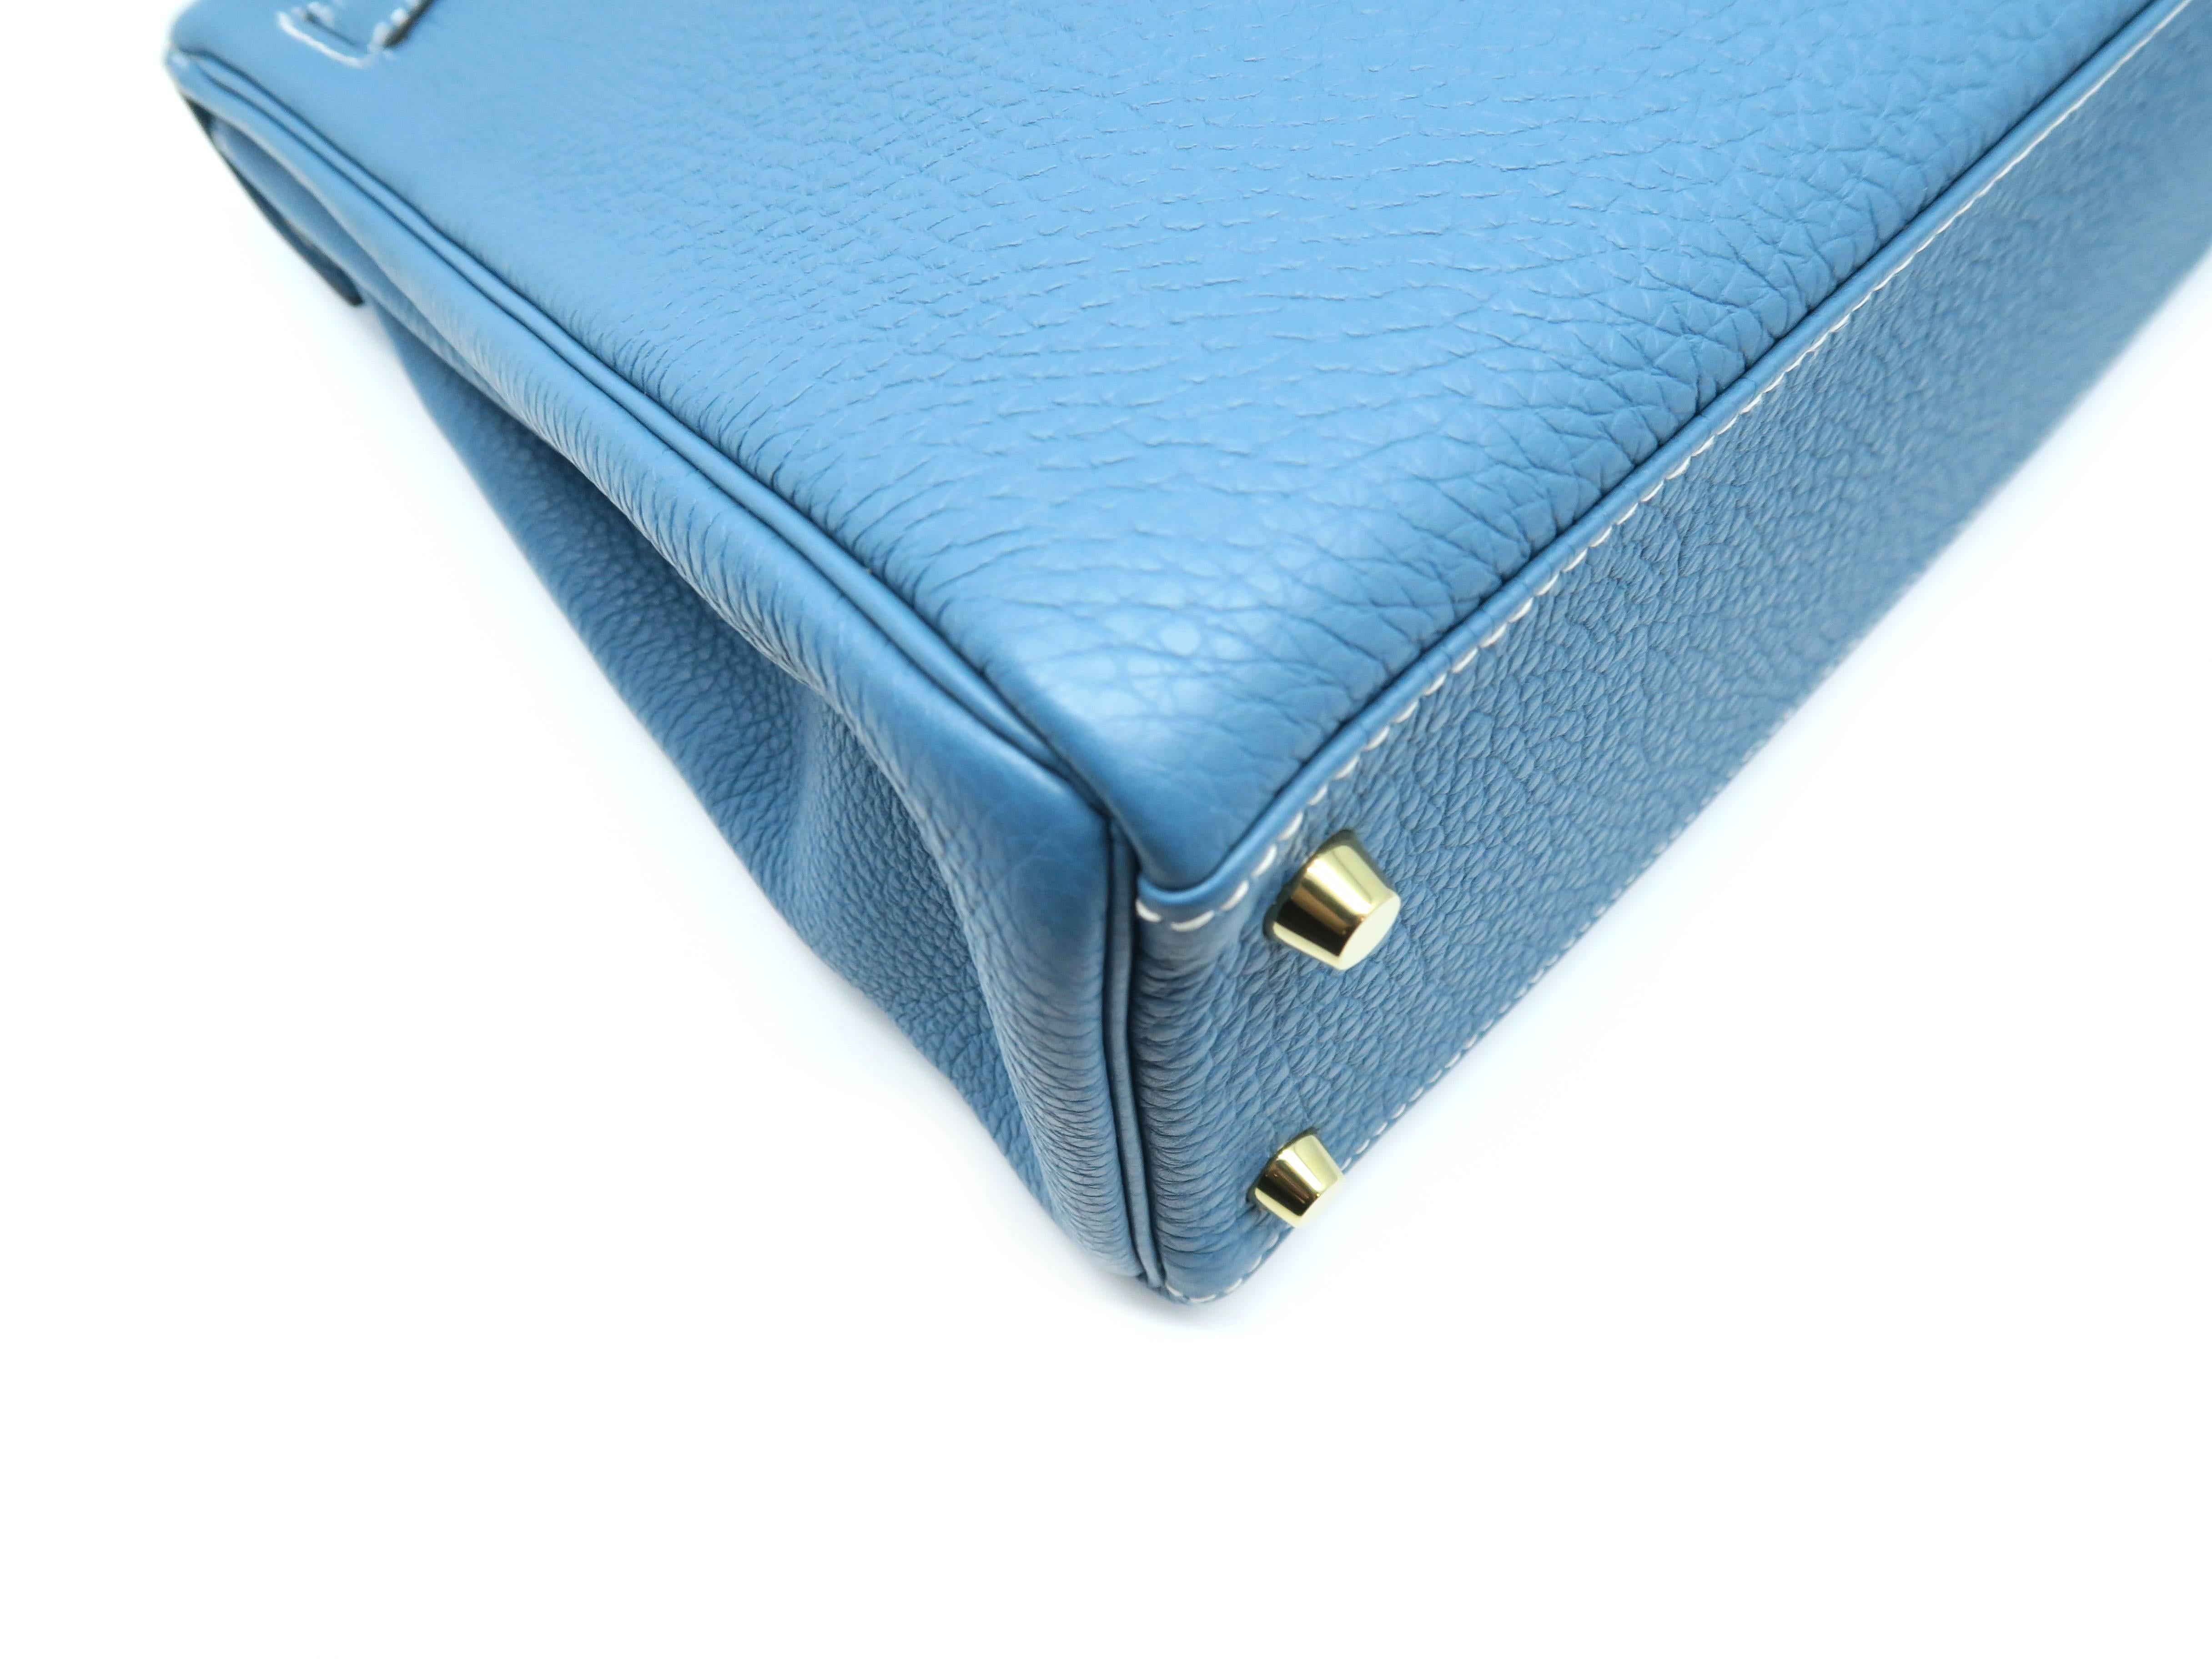 Hermes Kelly 32 Blue / Bleu Jean Togo Leather Satchel Bag 1